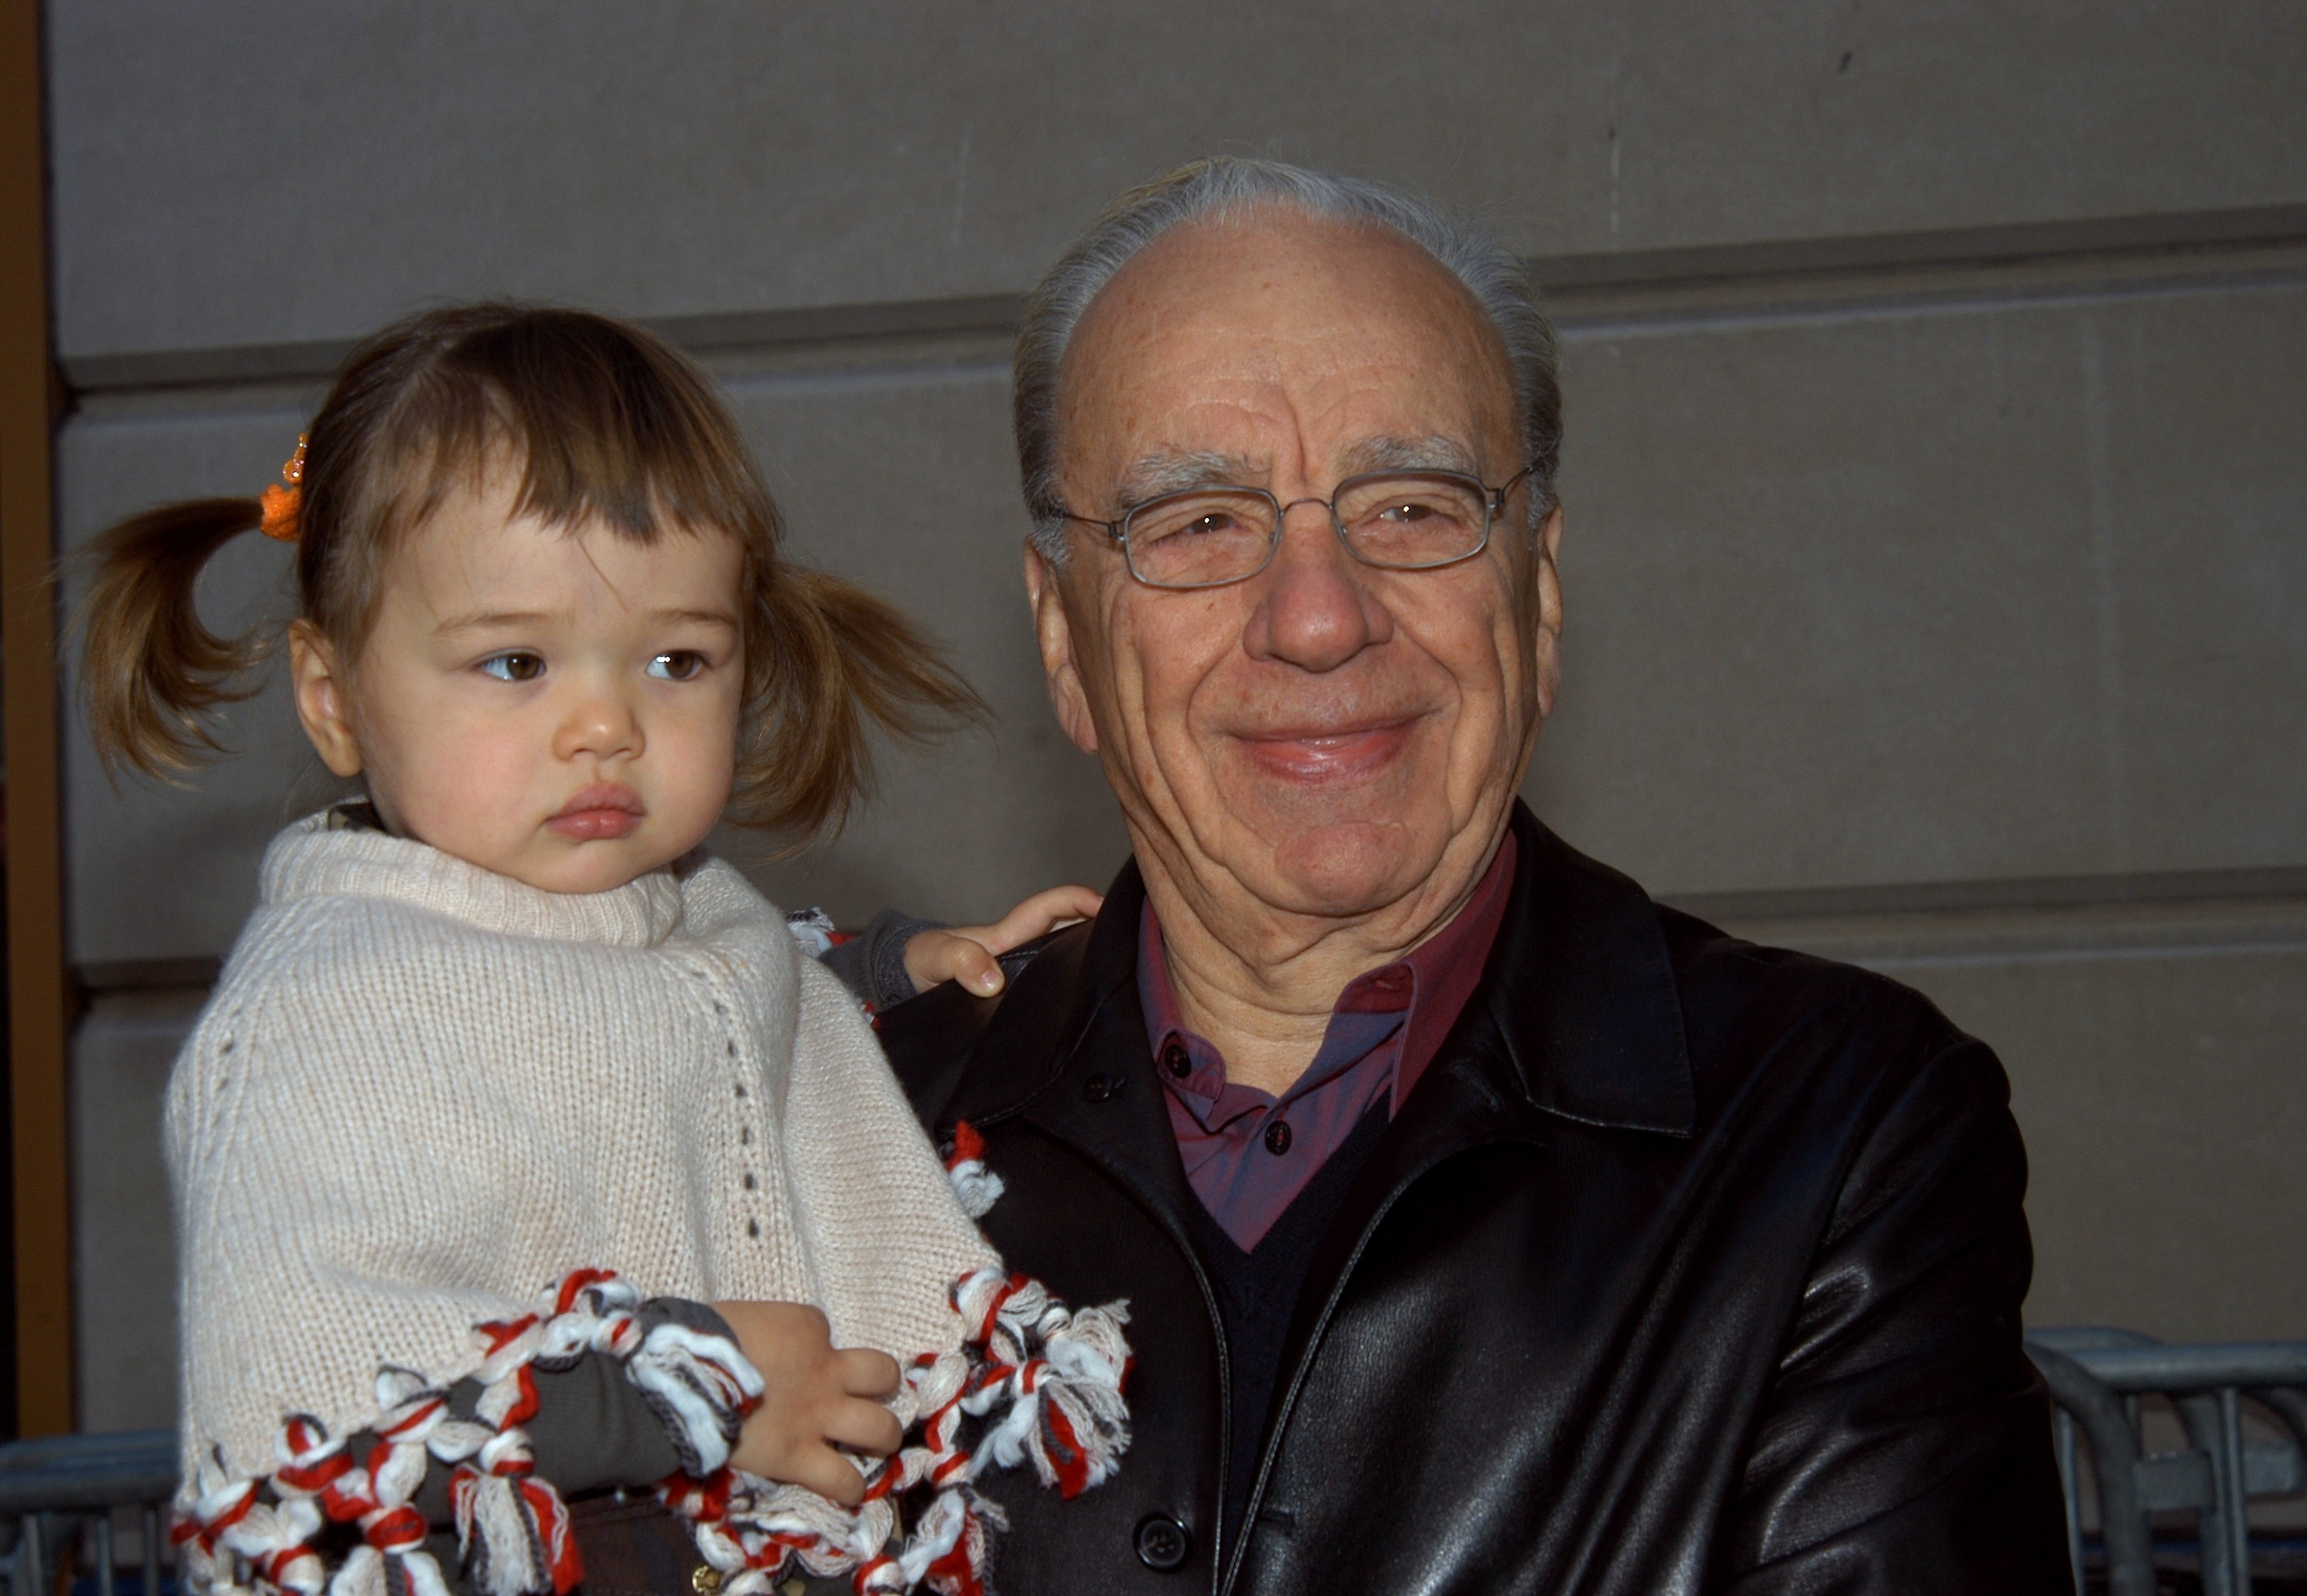 Rupert Murdoch holding his daughter